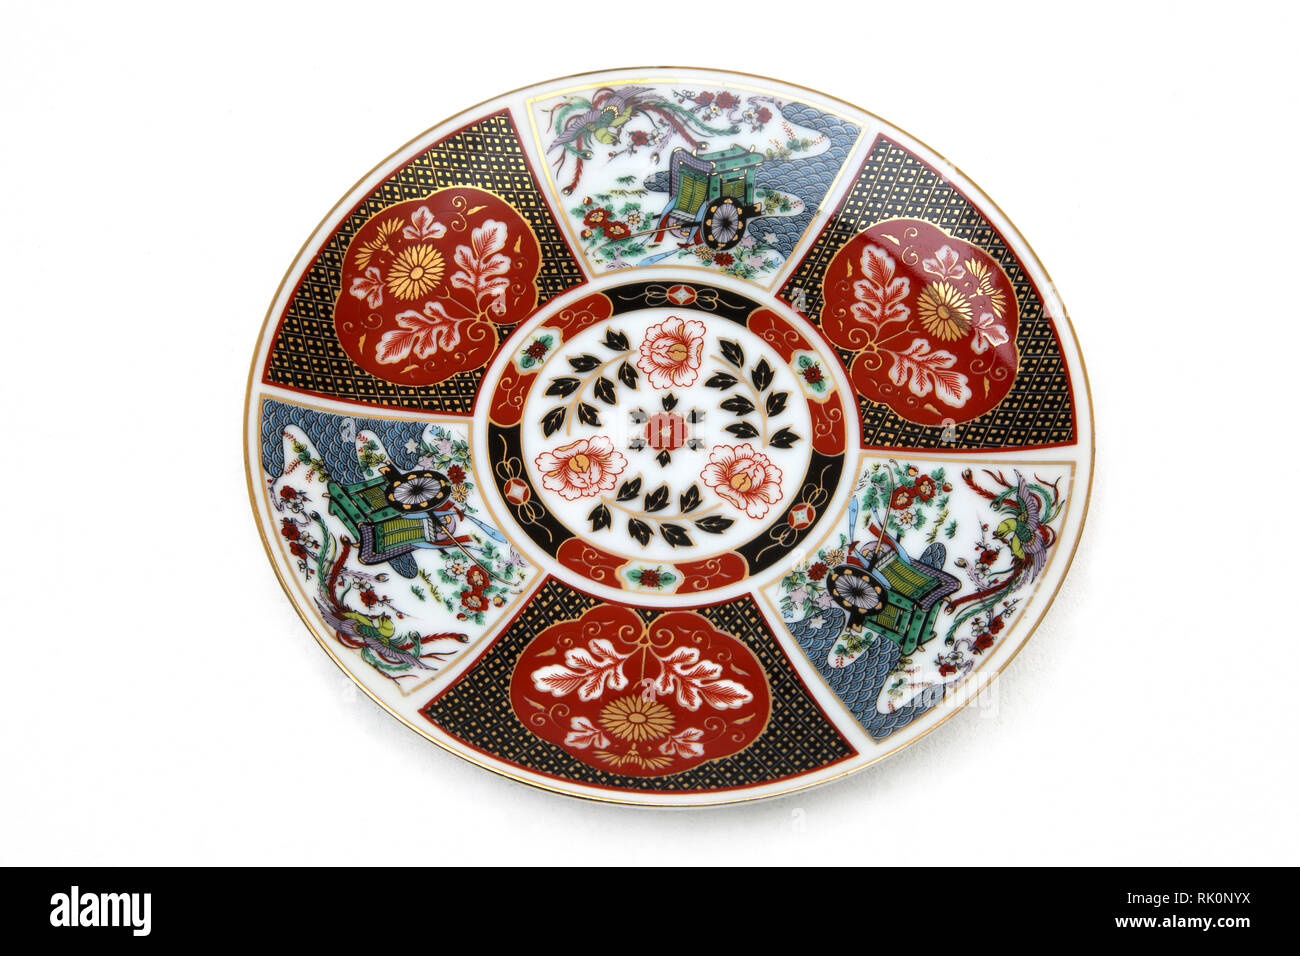 Vintage porcelaine Imari Japanese plate dispose de jantes dorées, murs, plissé et orné de fleurs, d'oiseaux, Brougham dans des couleurs brillantes. Banque D'Images